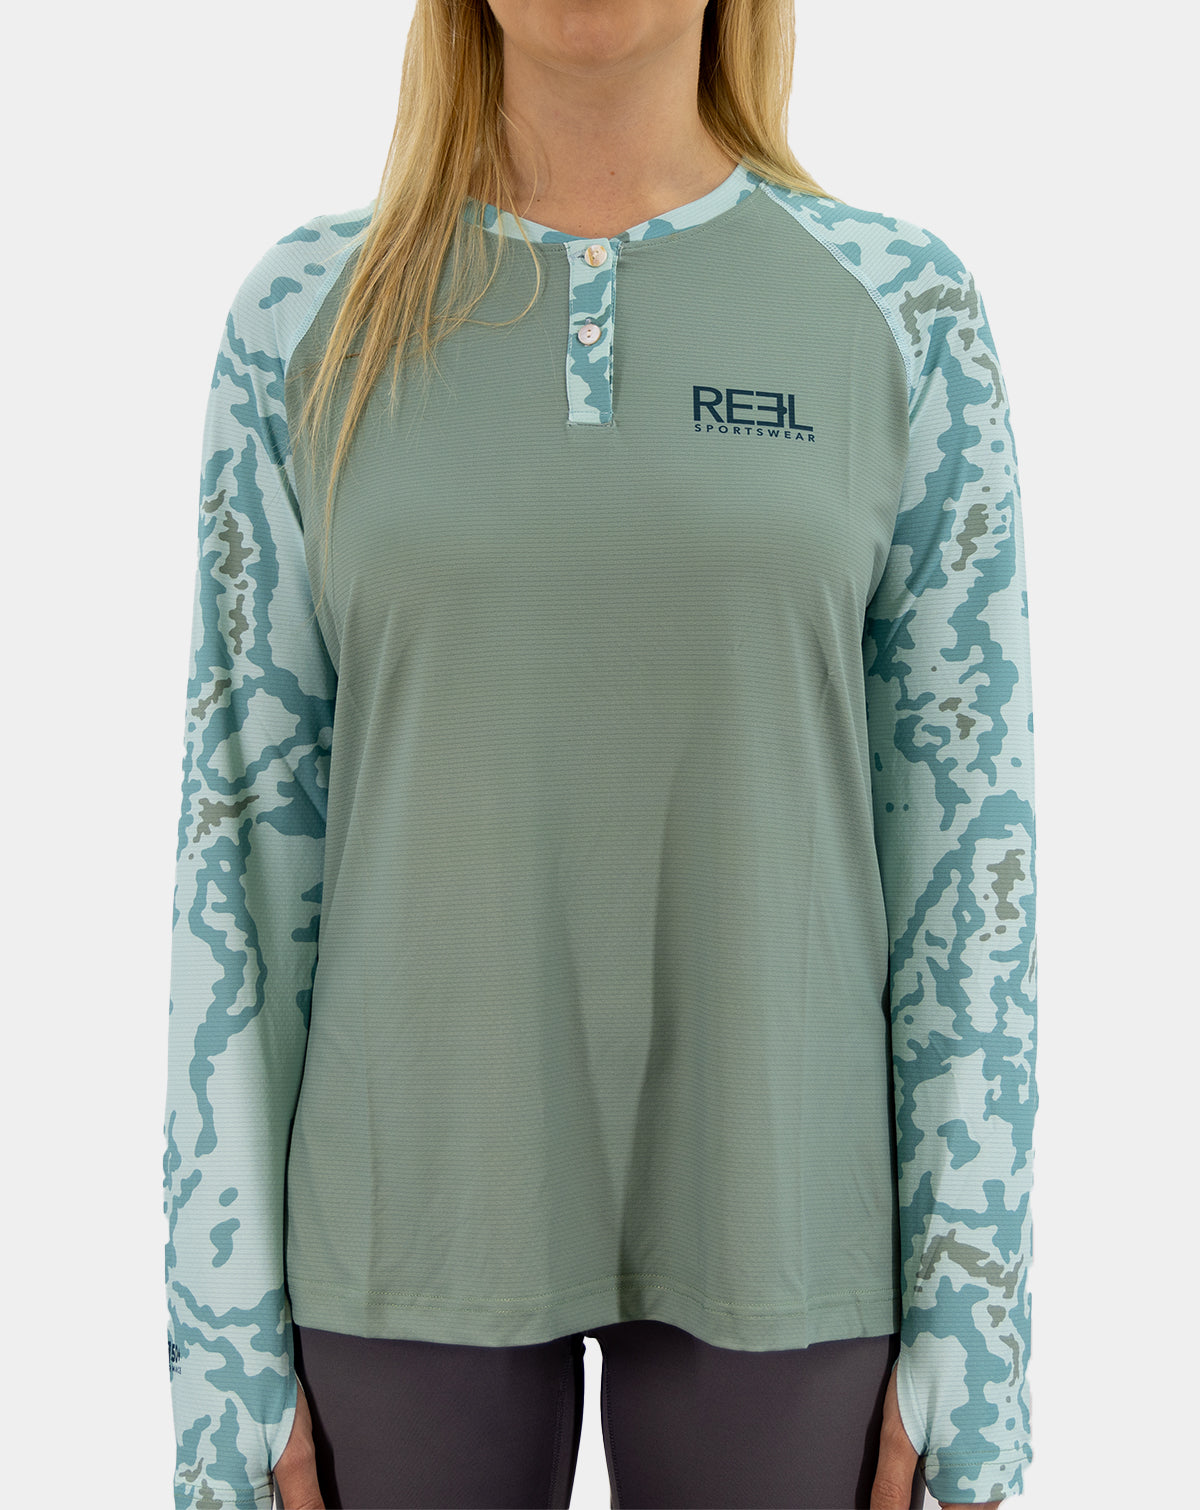 Chloe Pro+ Women's Henley fishing shirt - Reel Sportswear